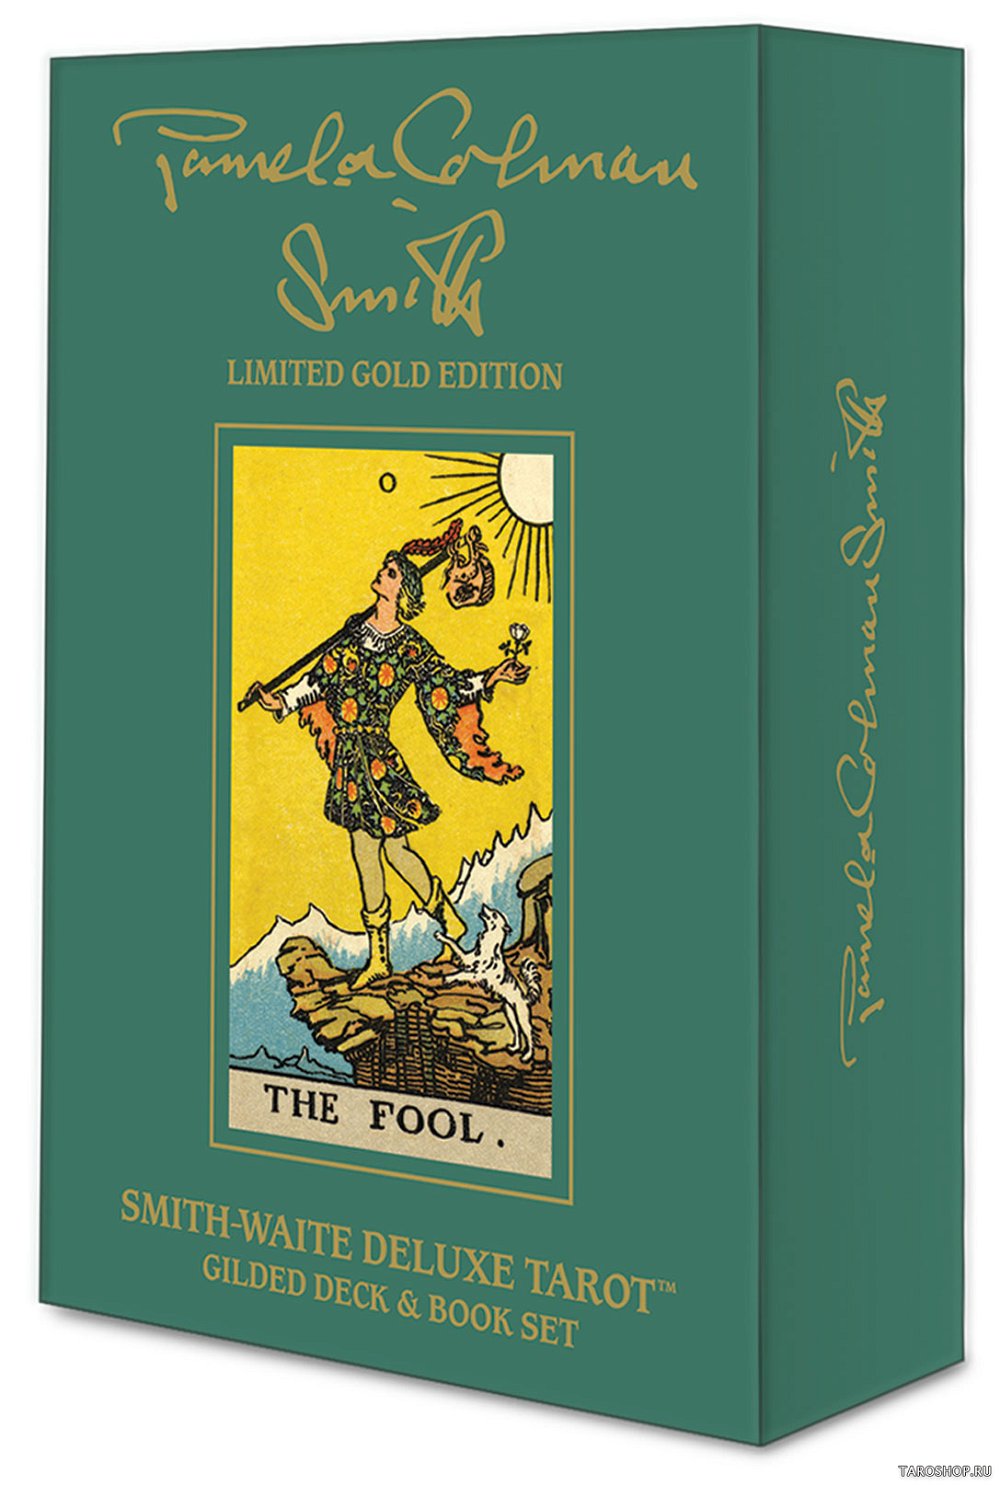 Smith-Waite Gold Edition. Smith-Waite Deluxe Tarot: Gilded Deck & Book Set